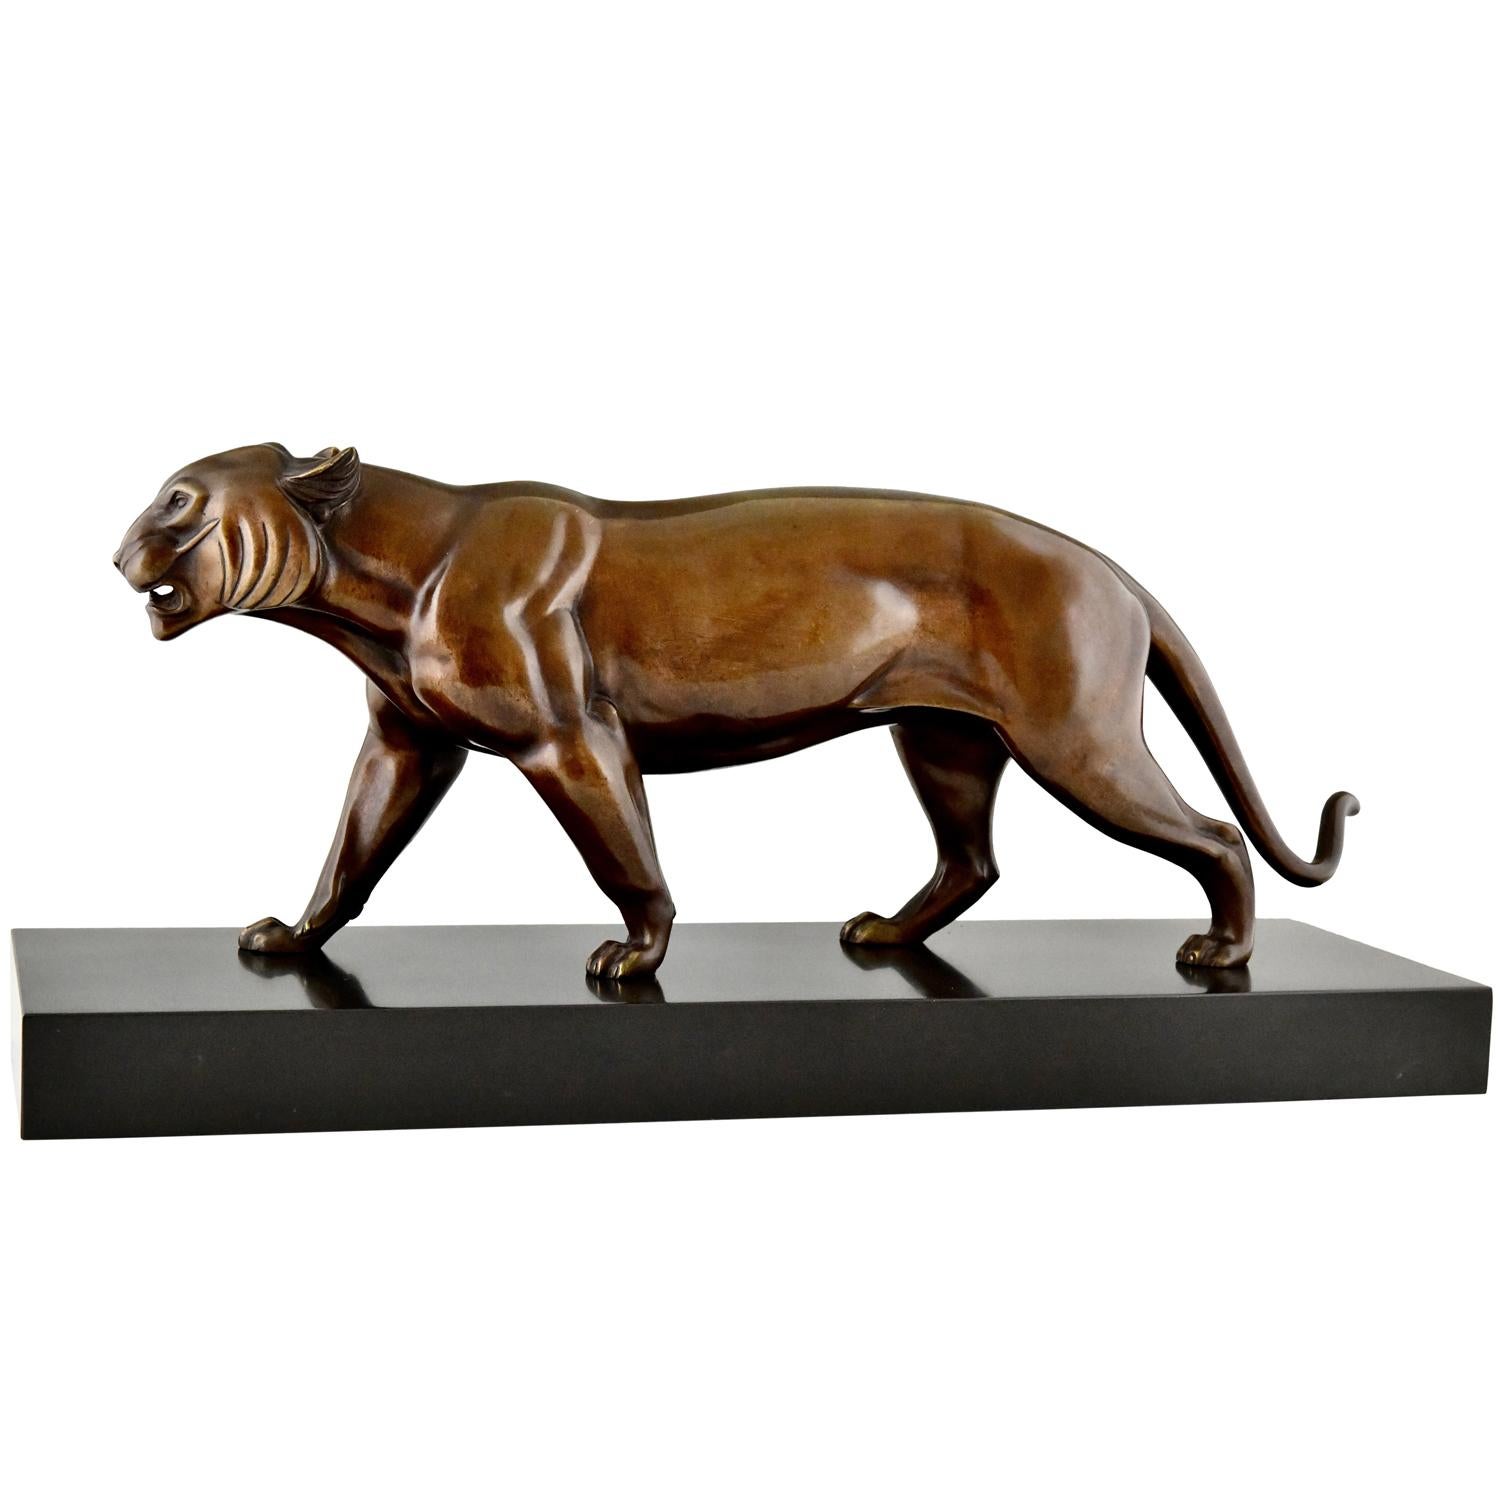 Art-Déco-Skulptur eines Panthers aus Bronze, signiert von Irenee Rochard.
Die Skulptur hat eine braune Patina und steht auf einem Sockel aus schwarzem belgischem Marmor Frankreich ca. 1930
Literatur:
Tiere in Bronze von Christopher Payne. Club der